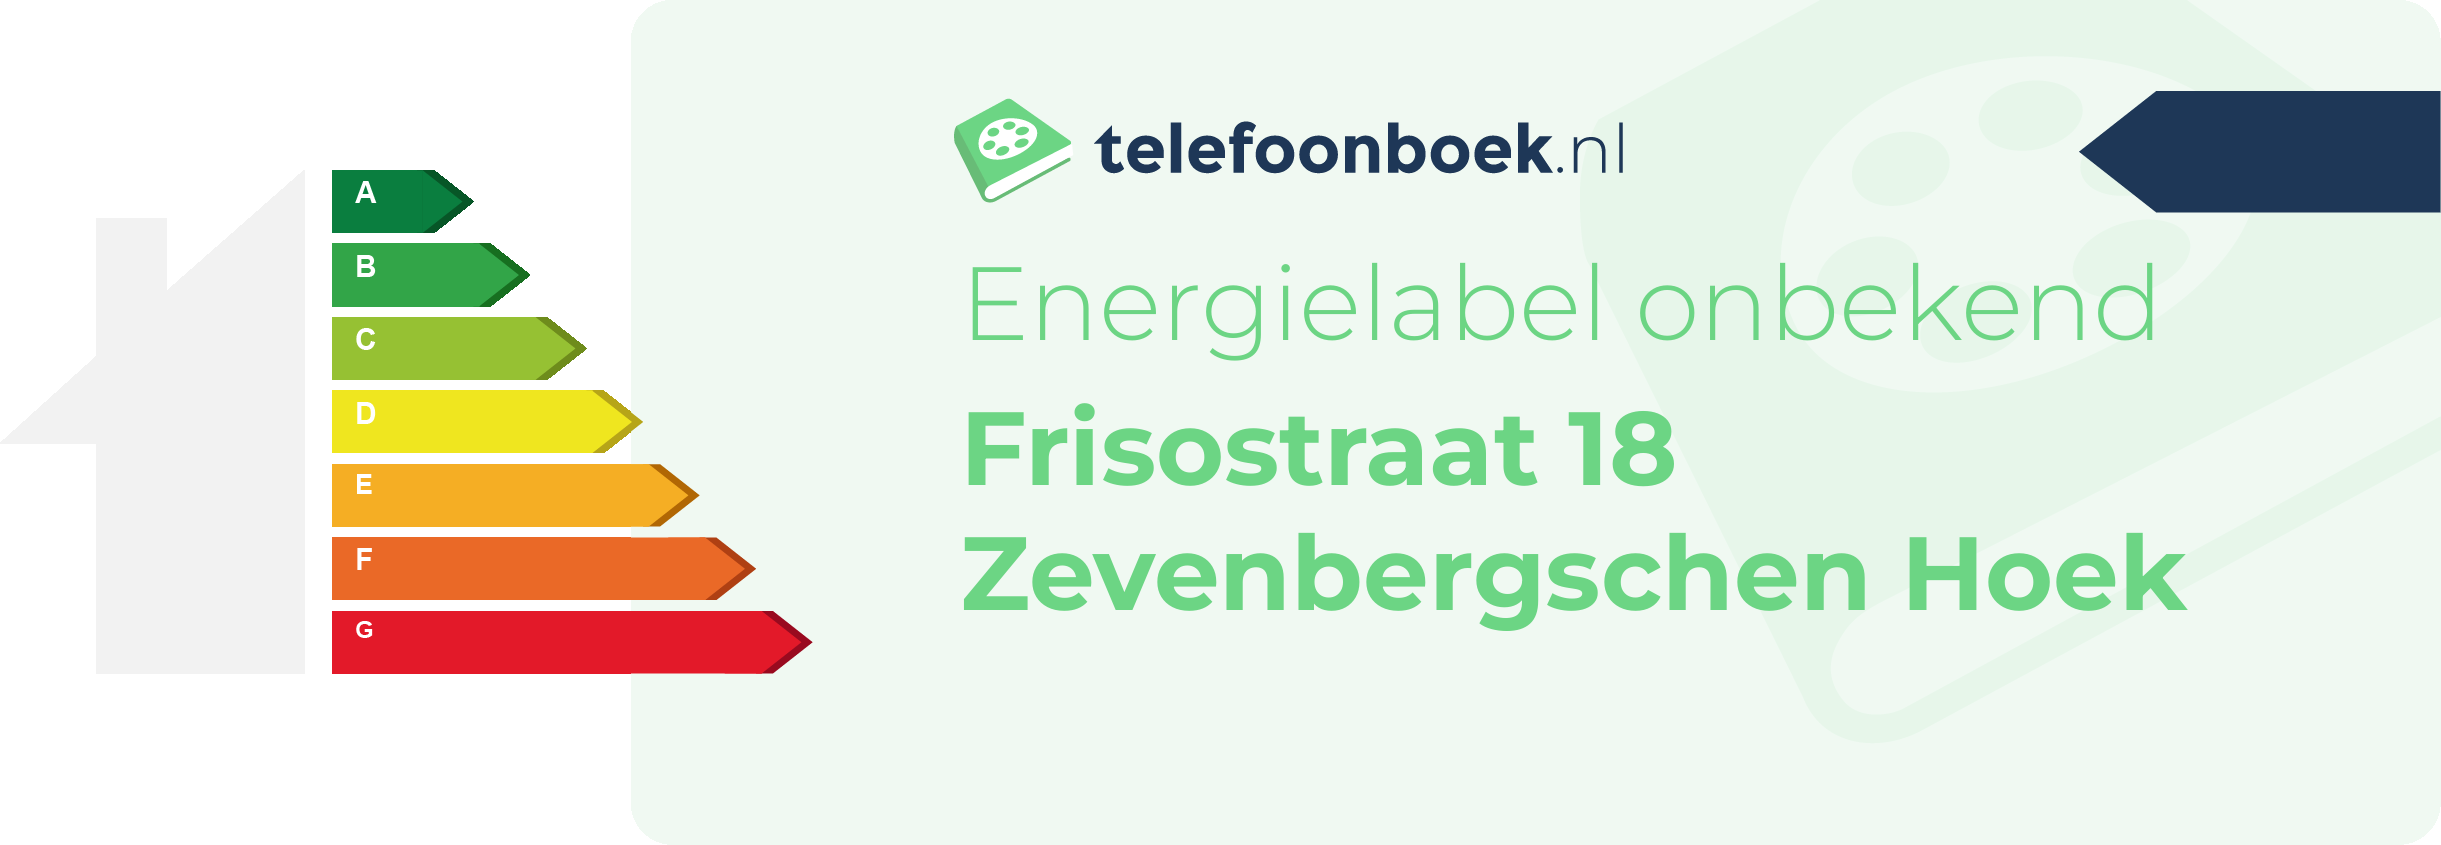 Energielabel Frisostraat 18 Zevenbergschen Hoek